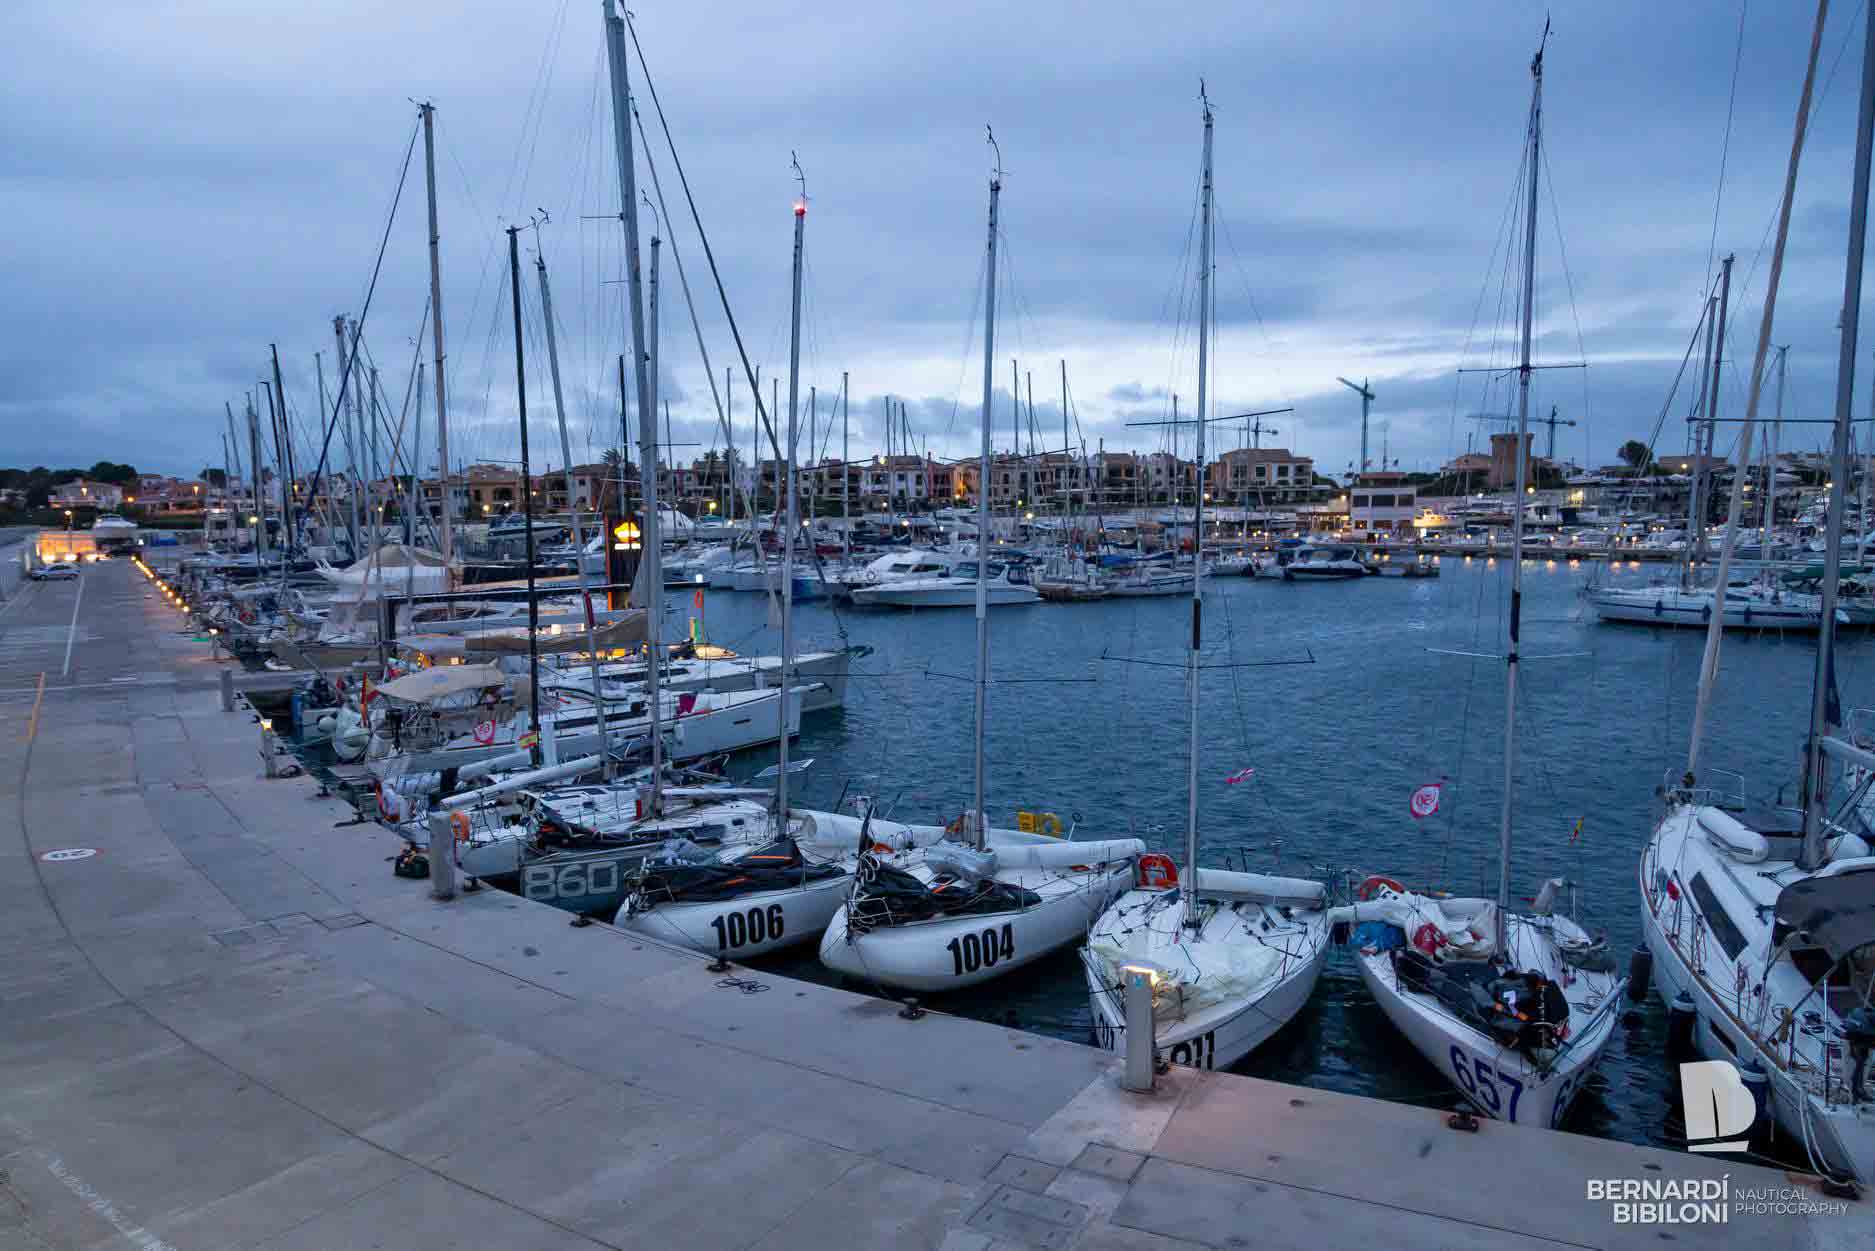 El Club Nàutic Sa Ràpita recibirá a la flota de la nueva regata de la clase Mini Solo Med 2022